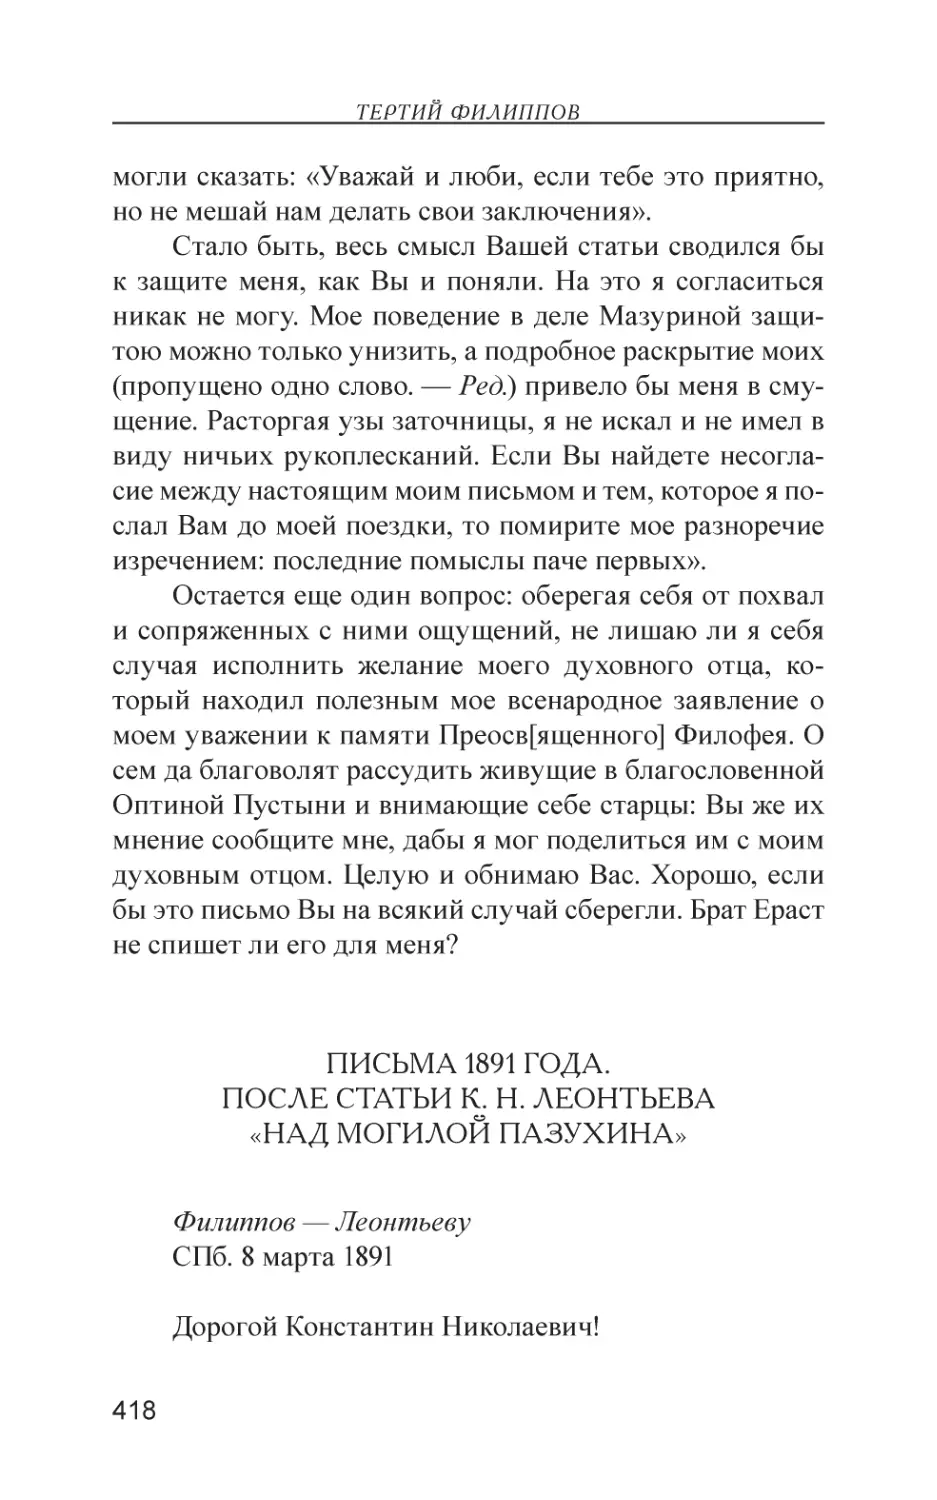 Письма 1891 года. После статьи К. Н. Леонтьева «Над могилой Пазухина»